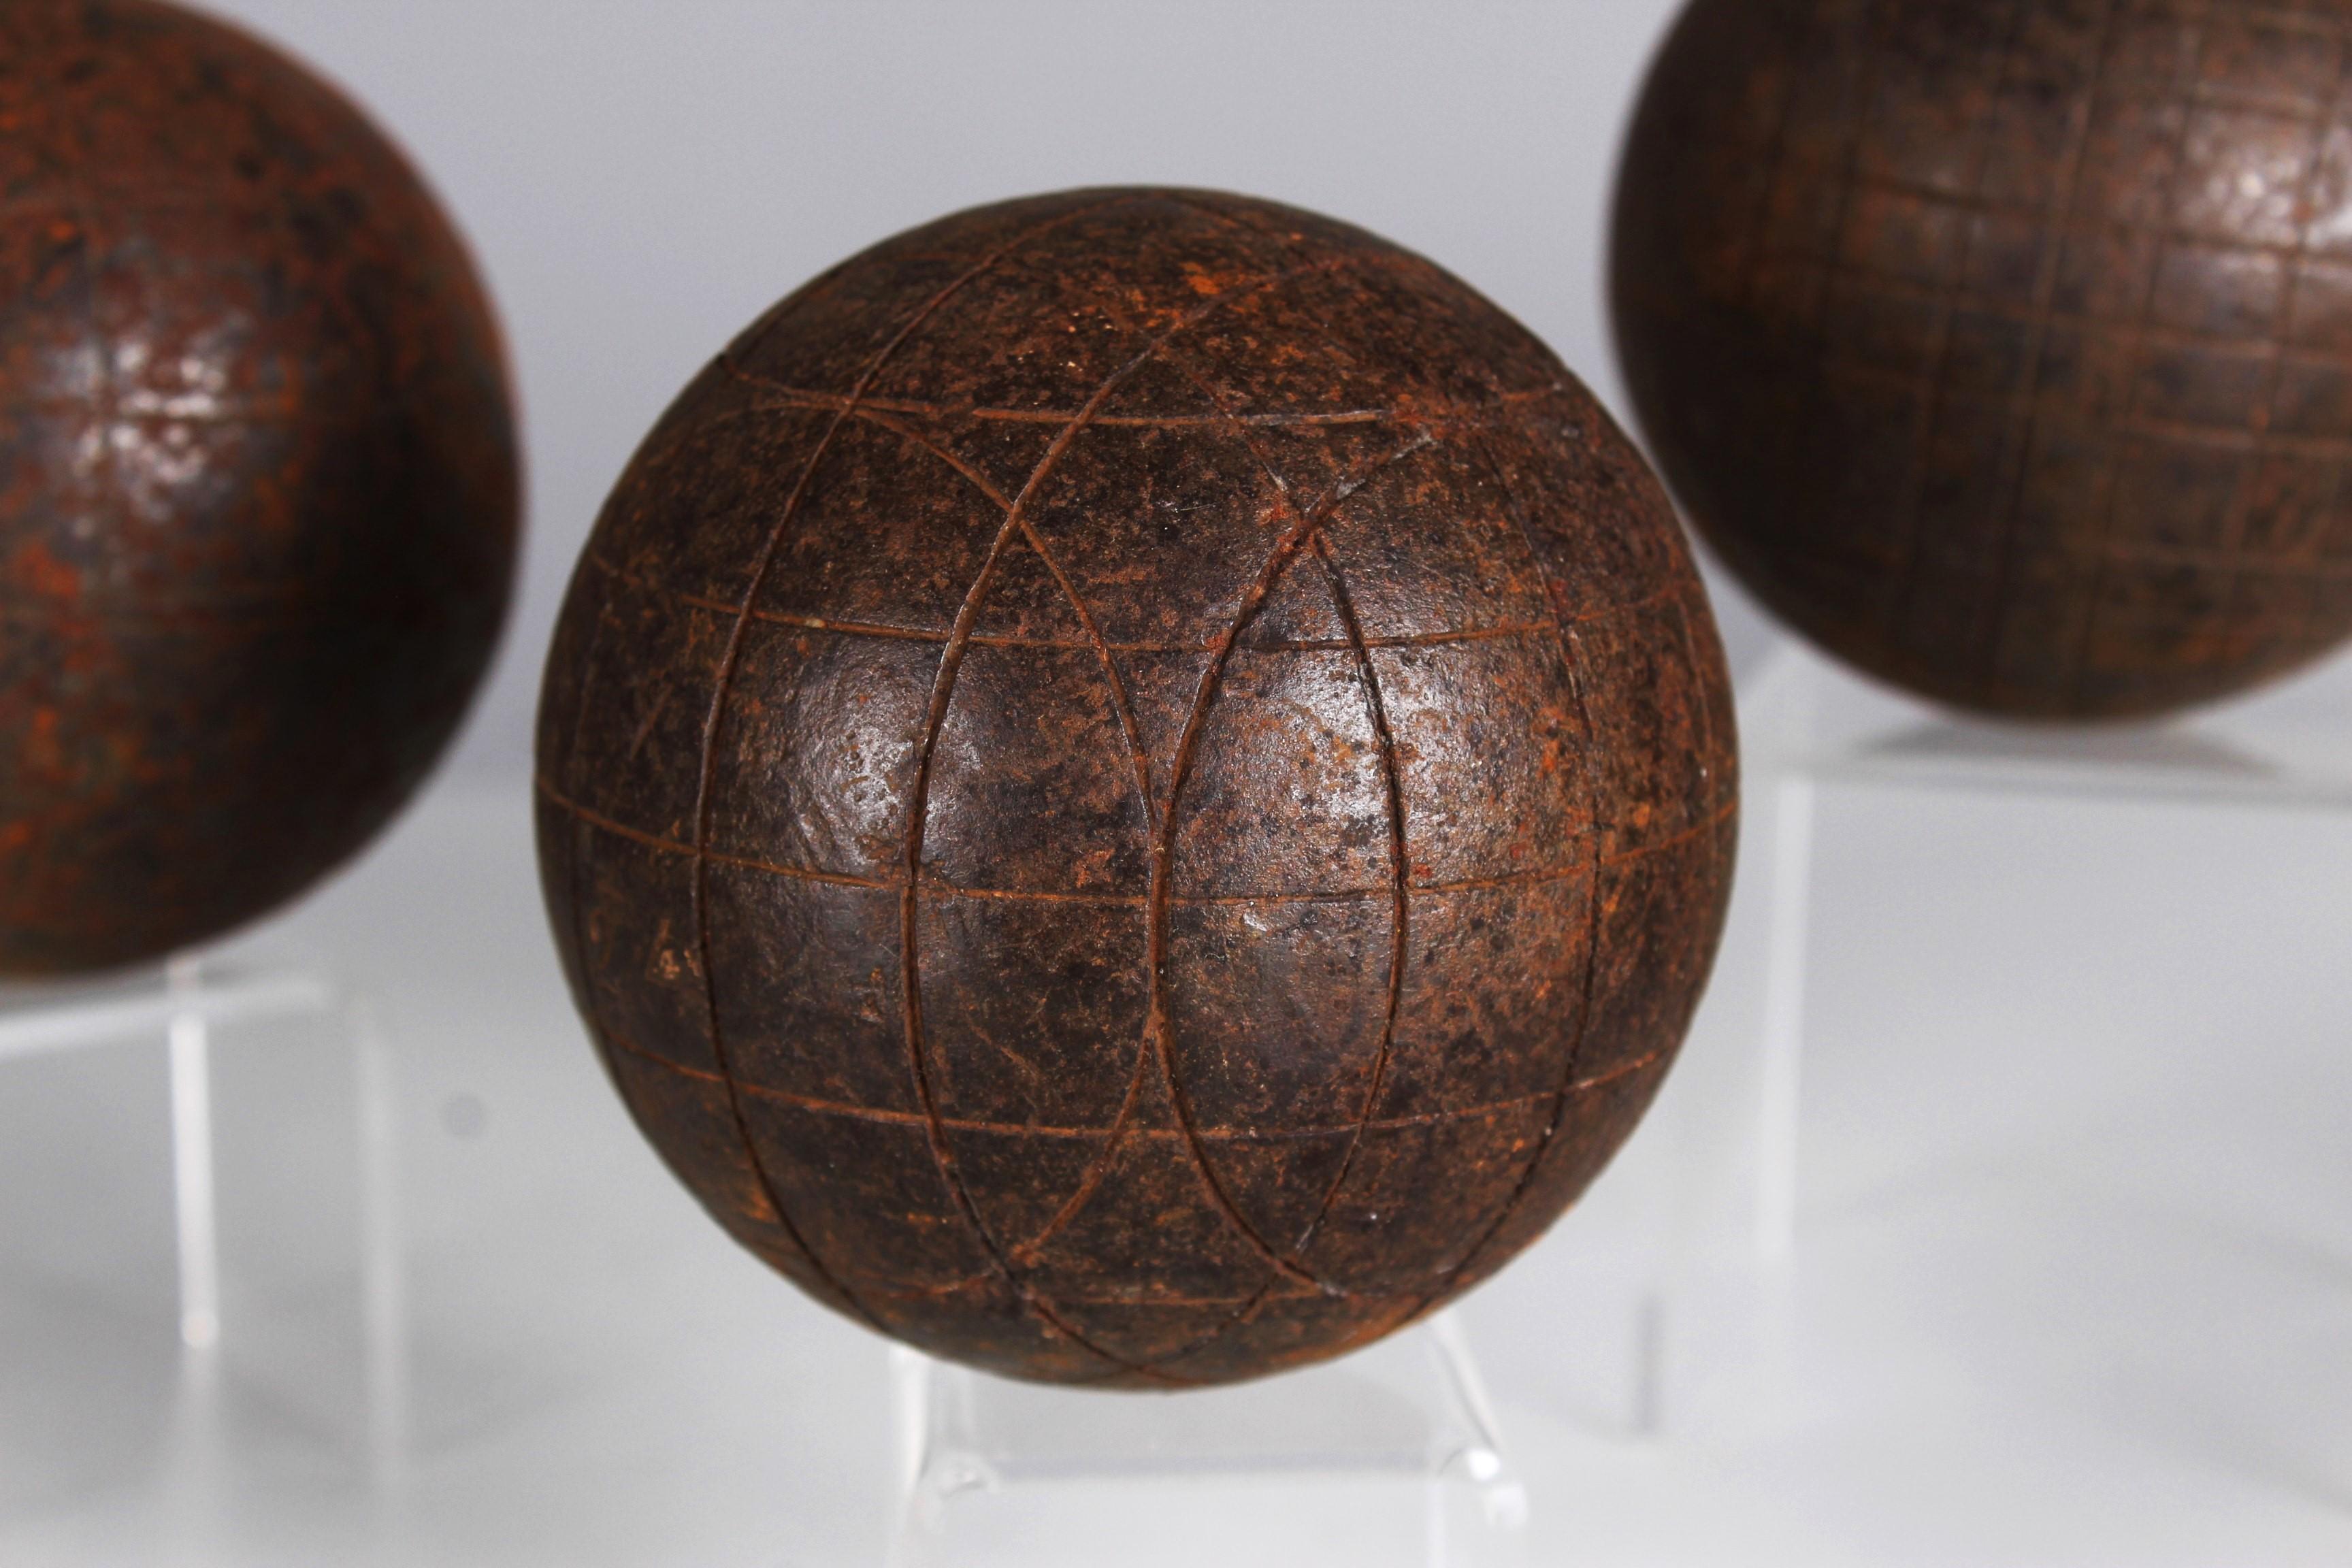 Schönes, einzigartiges Boule-Set mit drei Boule-Kugeln, Frankreich, Ende 19. Jahrhundert.

Im 19. Jahrhundert erlebten antike Boulekugeln aus Metall eine Renaissance, die das Boule-Spiel auf ein neues Niveau hob. 
Diese kunstvoll gefertigten Bälle